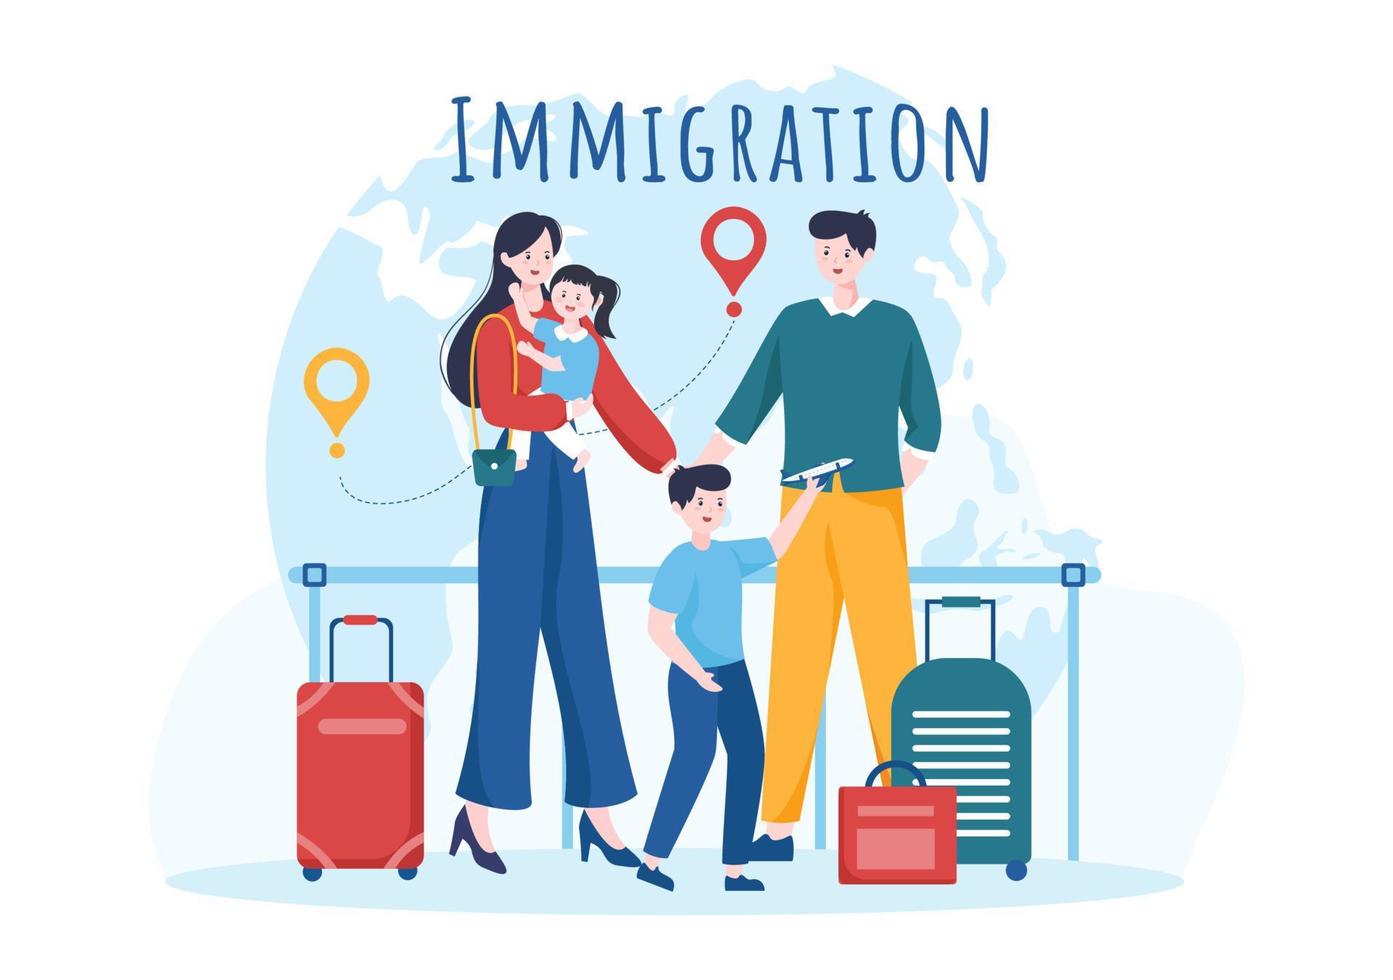 modelo de imigração ilustração plana de desenhos animados desenhados à mão de documento com visto e passaporte para se mudar para outro país vetor